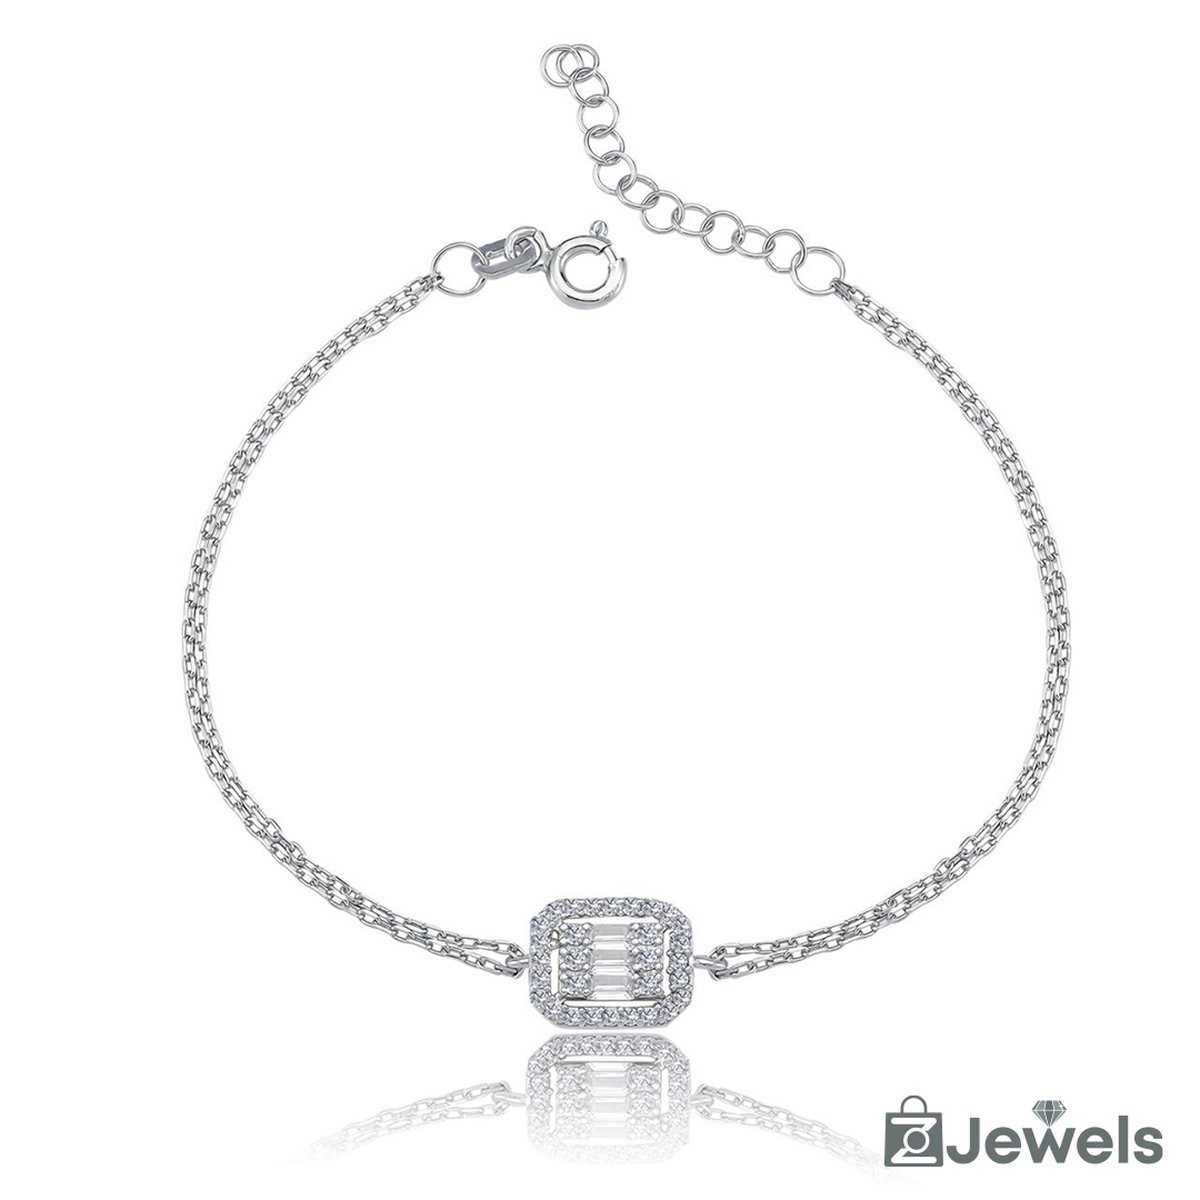 OZ Jewels Zilveren Armband met Rechthoekige Diamant Design - Accessoires - Liefdessieraden - Valentijnsdag - Cadeau - Moederdag - Armband Meisje - Sieraden Dames - In mooie geschenkverpakking